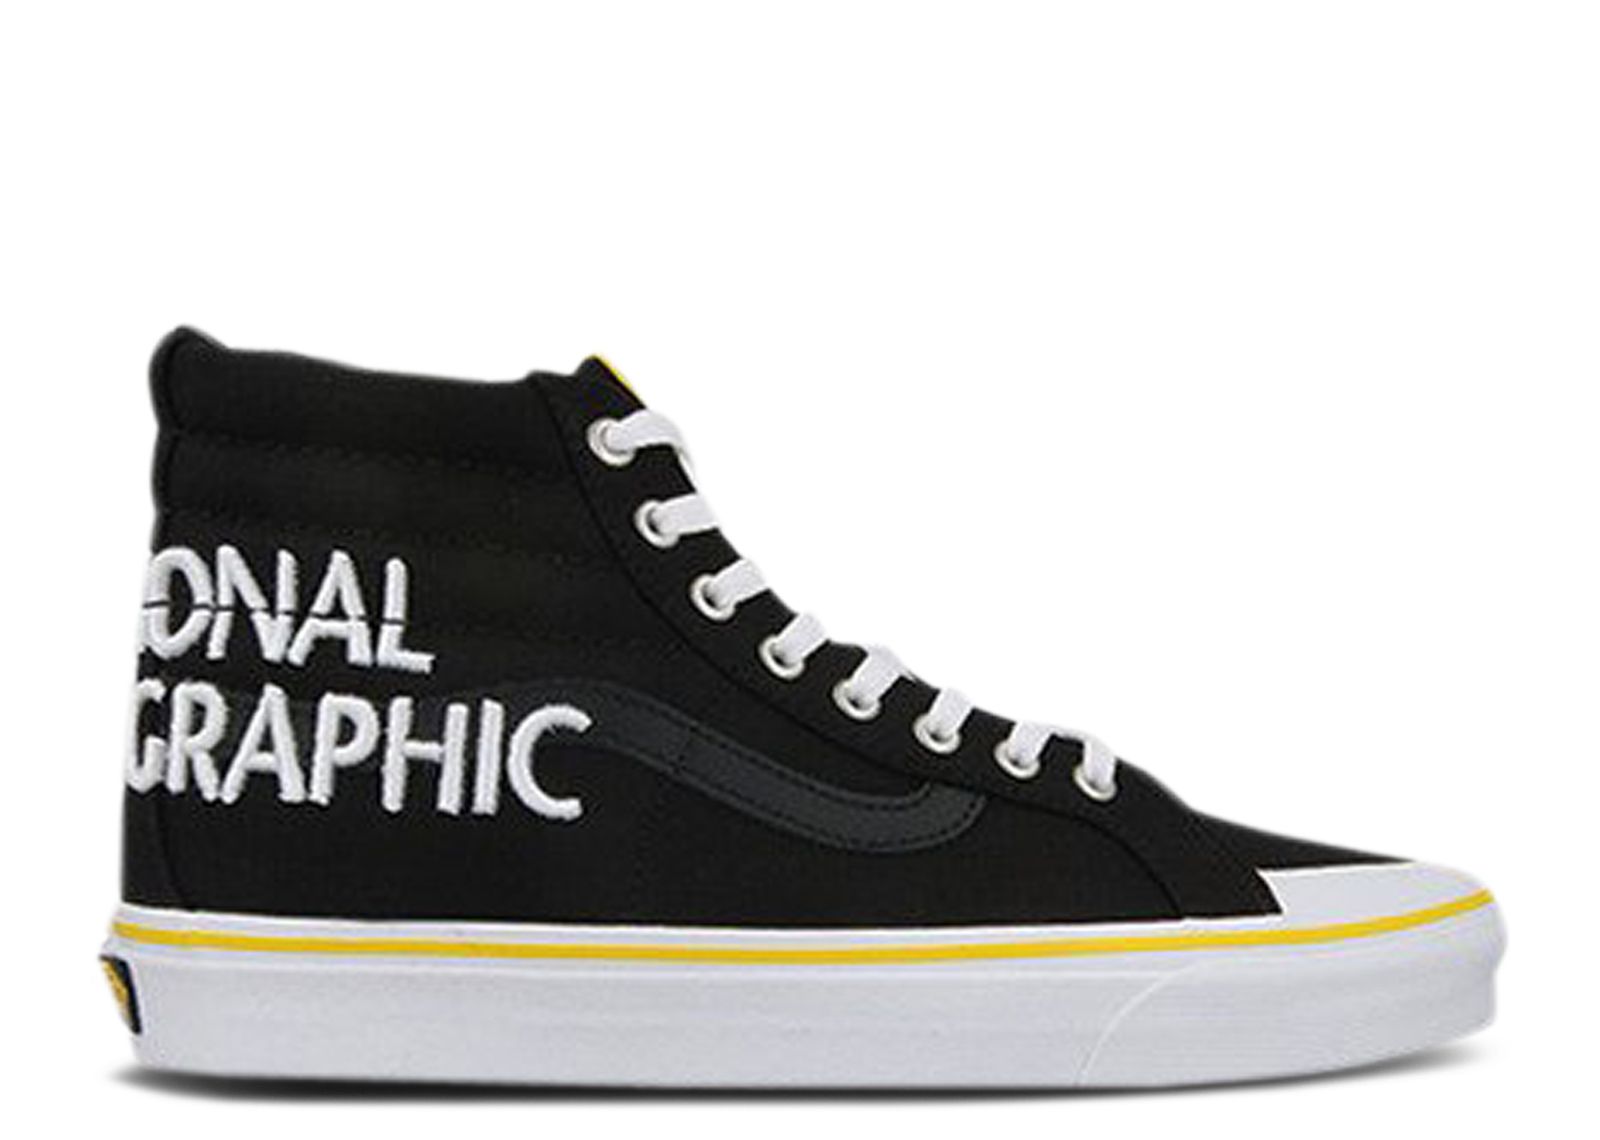 Кроссовки Vans National Geographic X Sk8-Hi Reissue 138 'Logo', черный кроссовки vans national geographic x sk8 hi reissue 138 logo черный